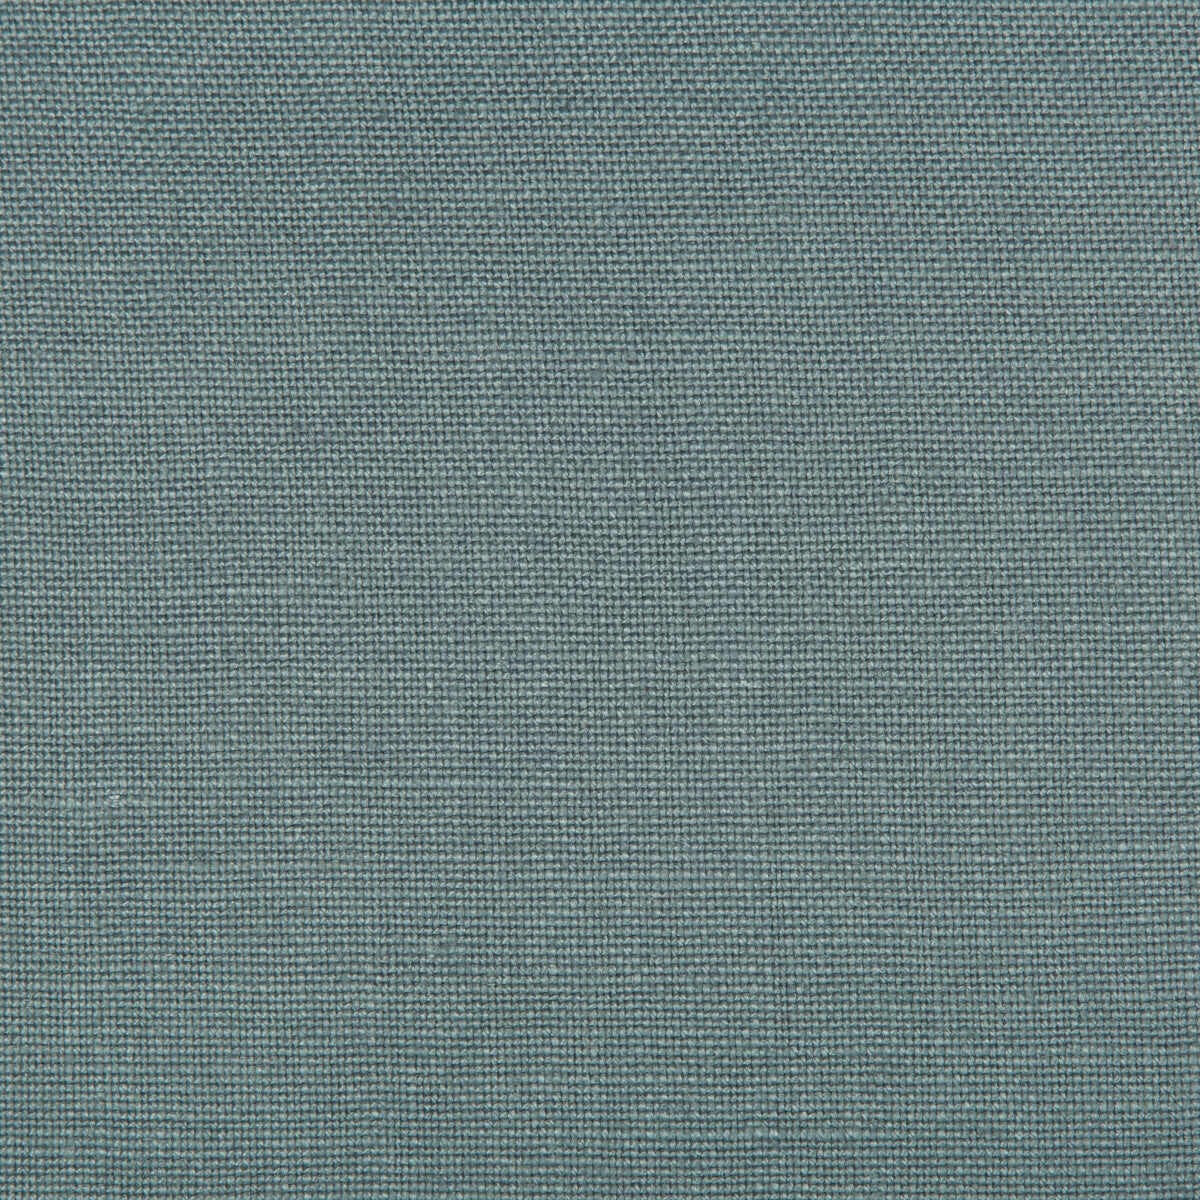 Kravet Basics fabric in 35342-15 color - pattern 35342.15.0 - by Kravet Basics